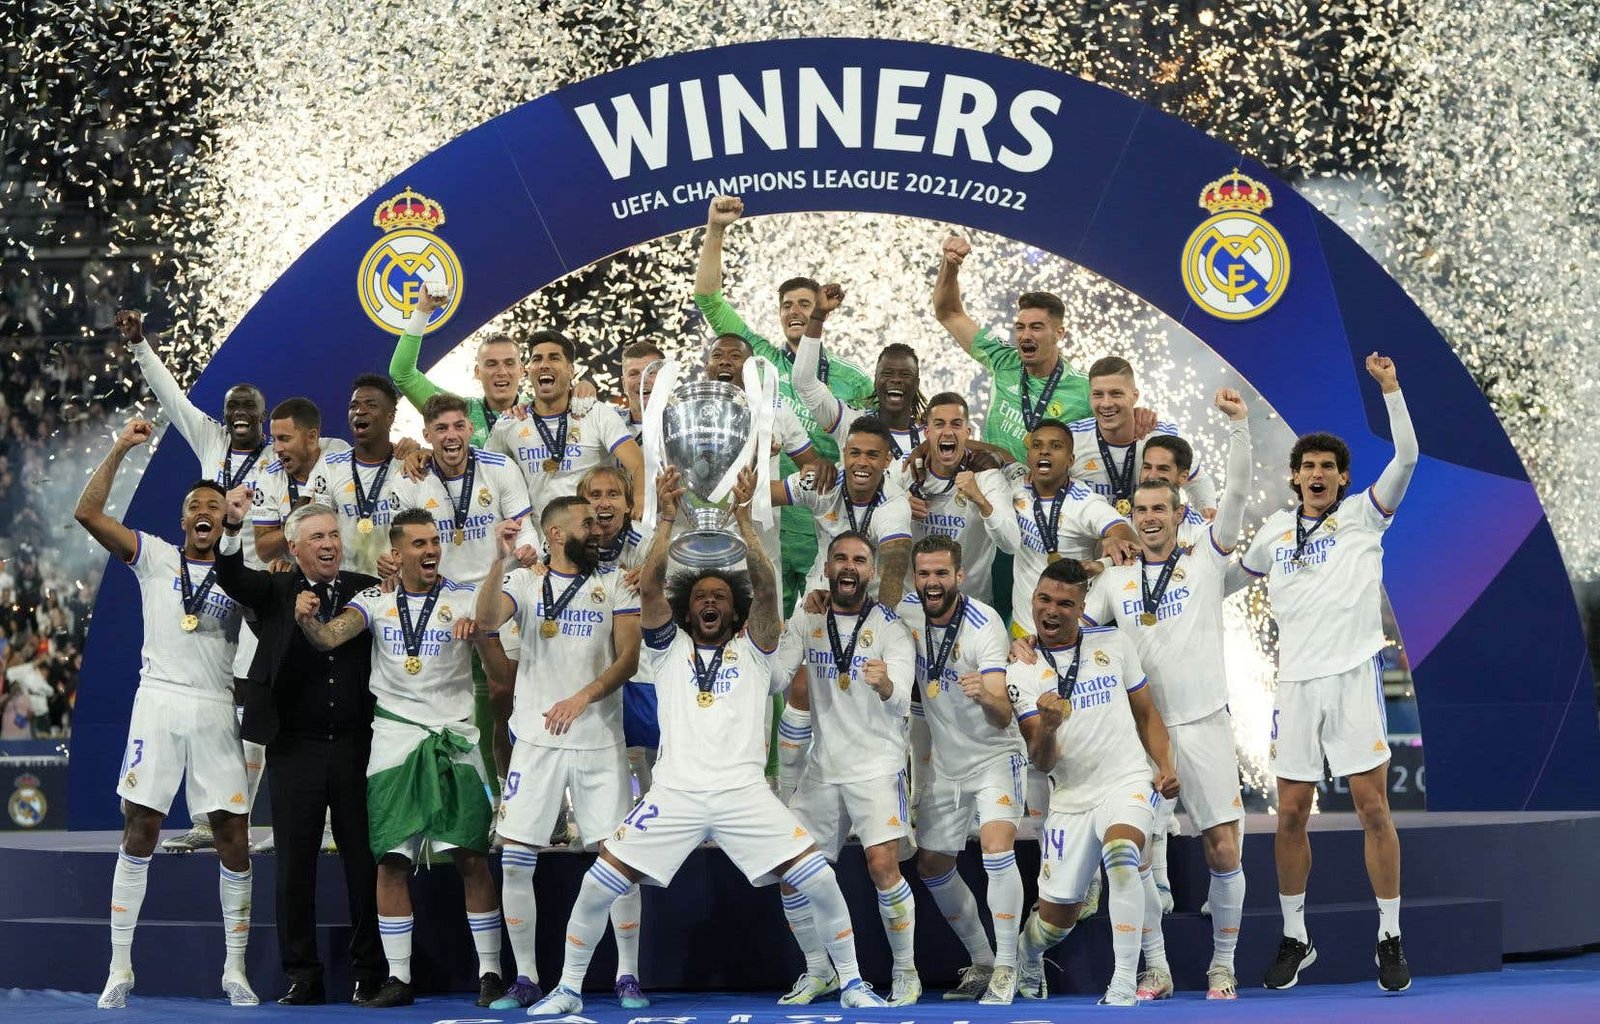 Des joueurs du Real Madrid célébrant la victoire.